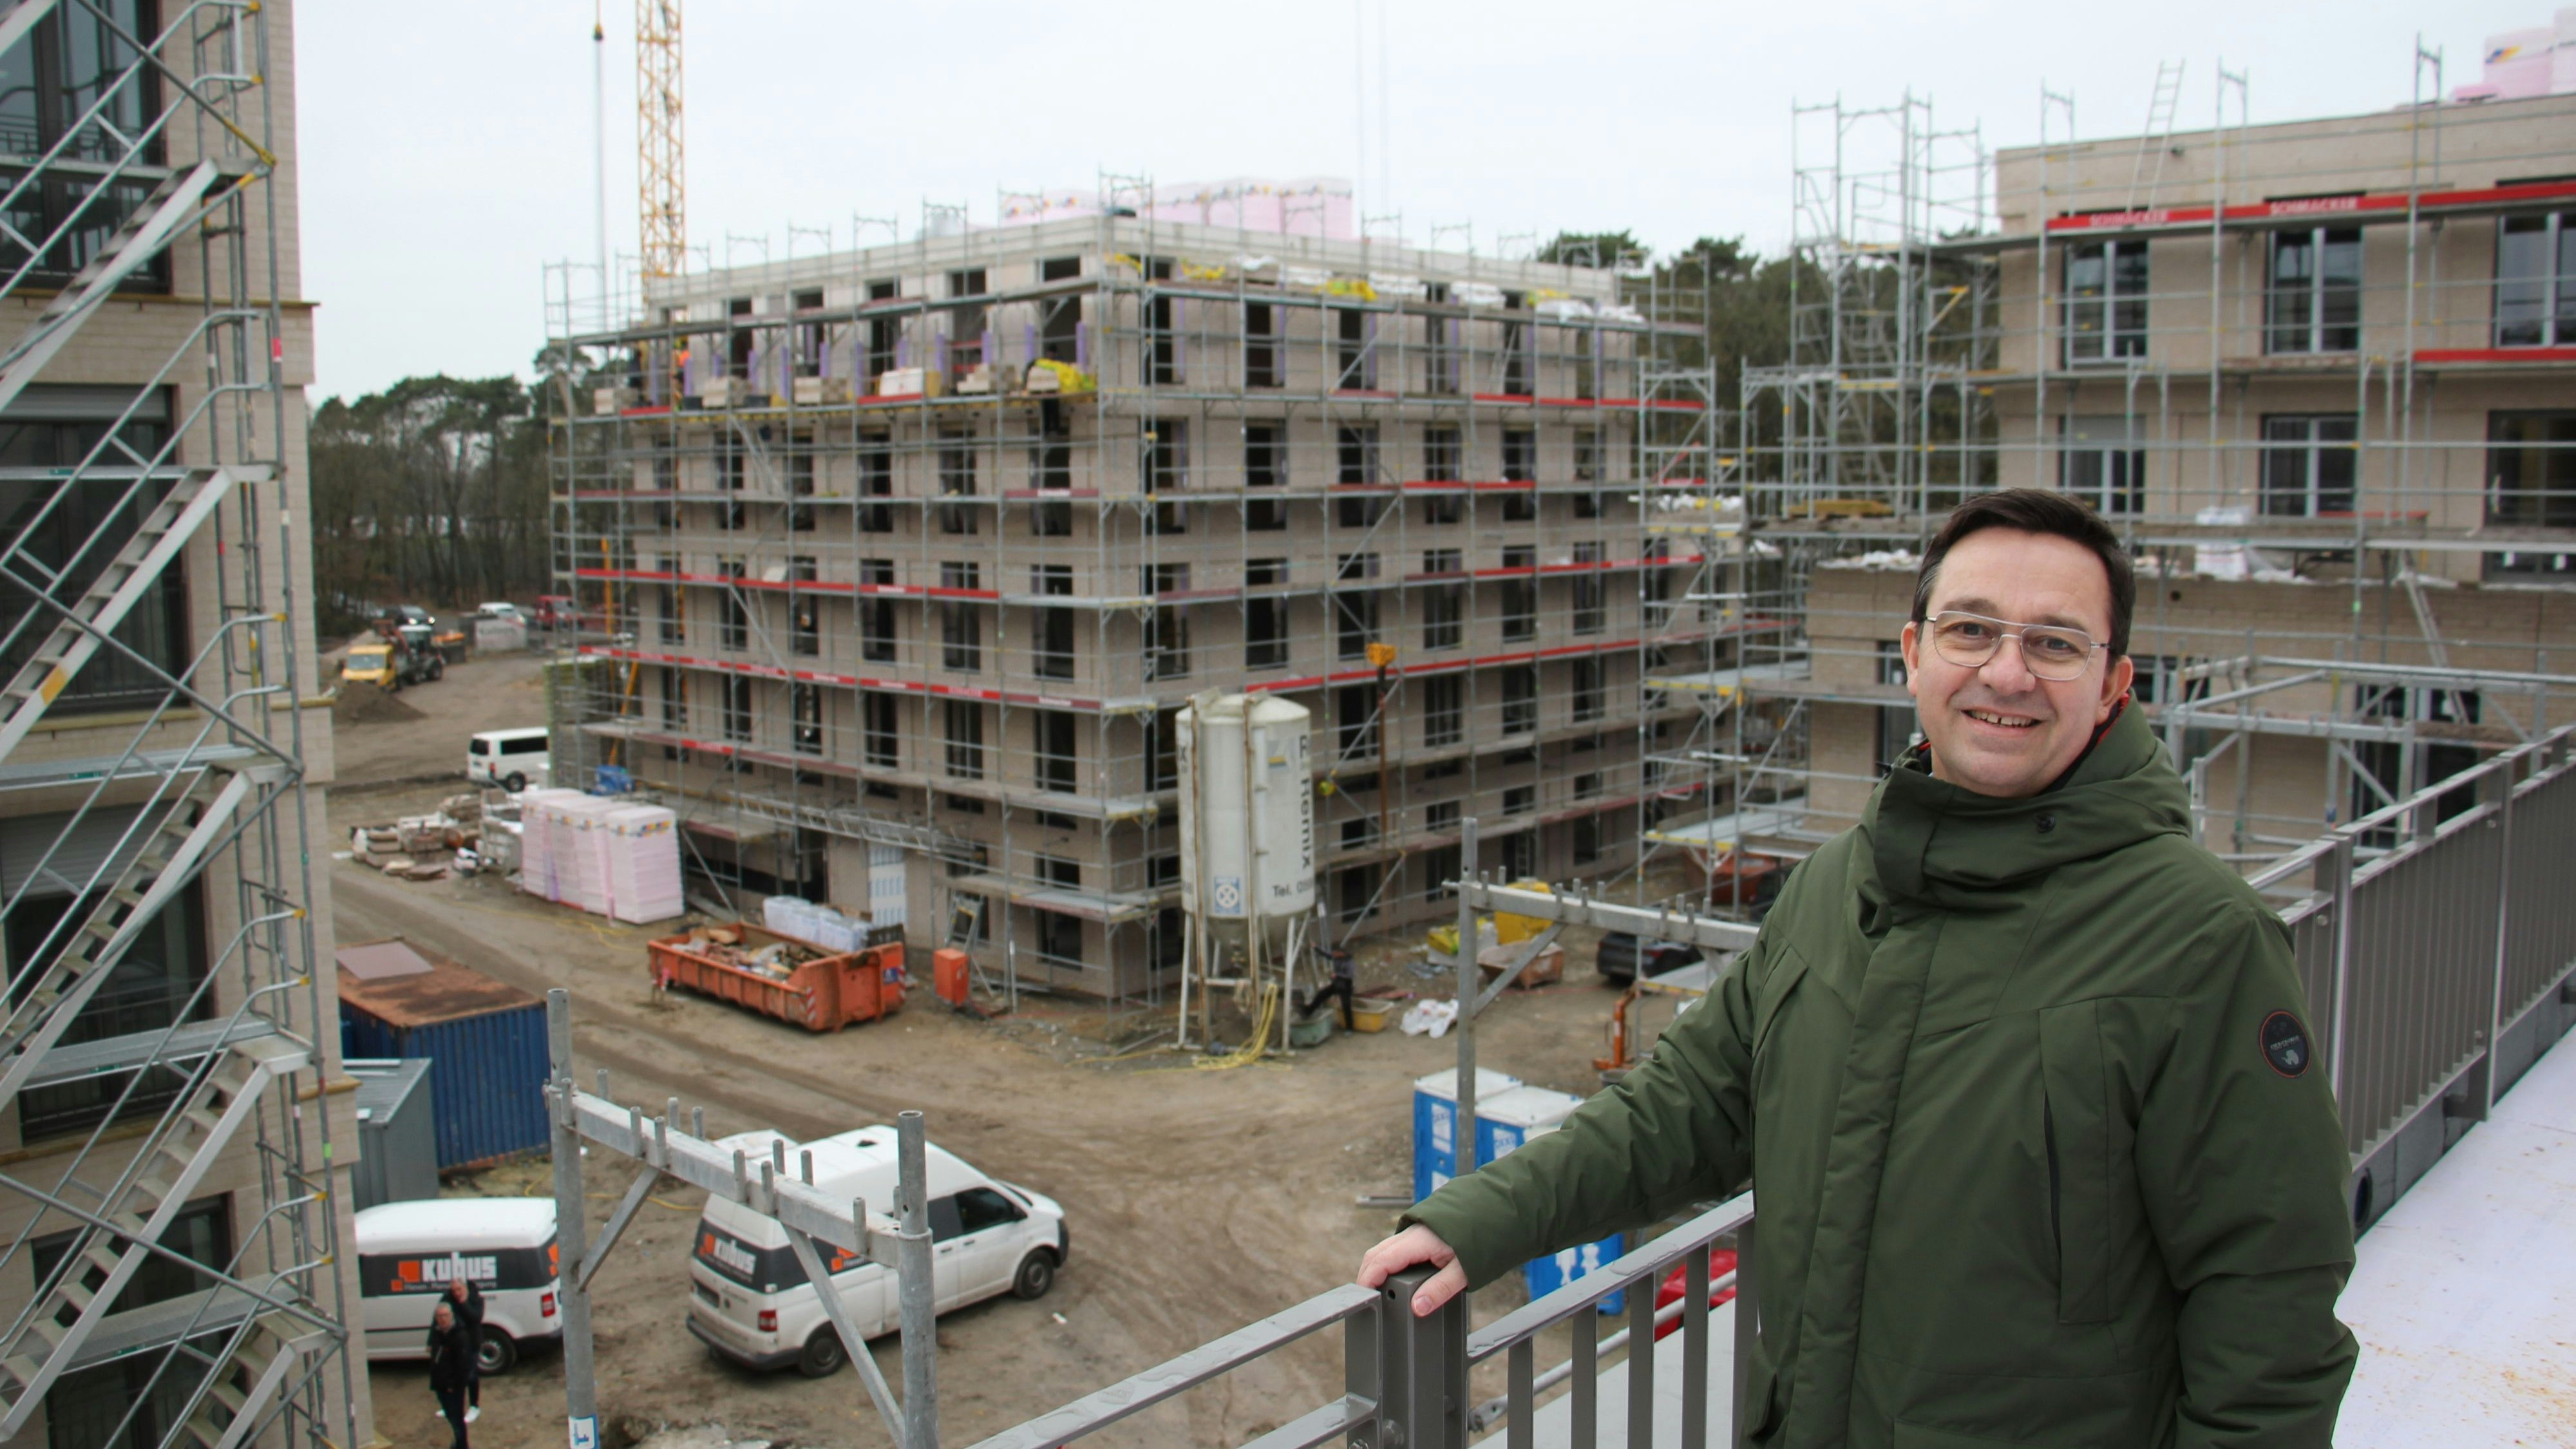 Zufriedener Blick auf die Baustelle: Investor Wolfgang Grieshop rechnet mit einer Fertigstellung der Studentenwohnanlage im Herbst dieses Jahres. Foto: Speckmann